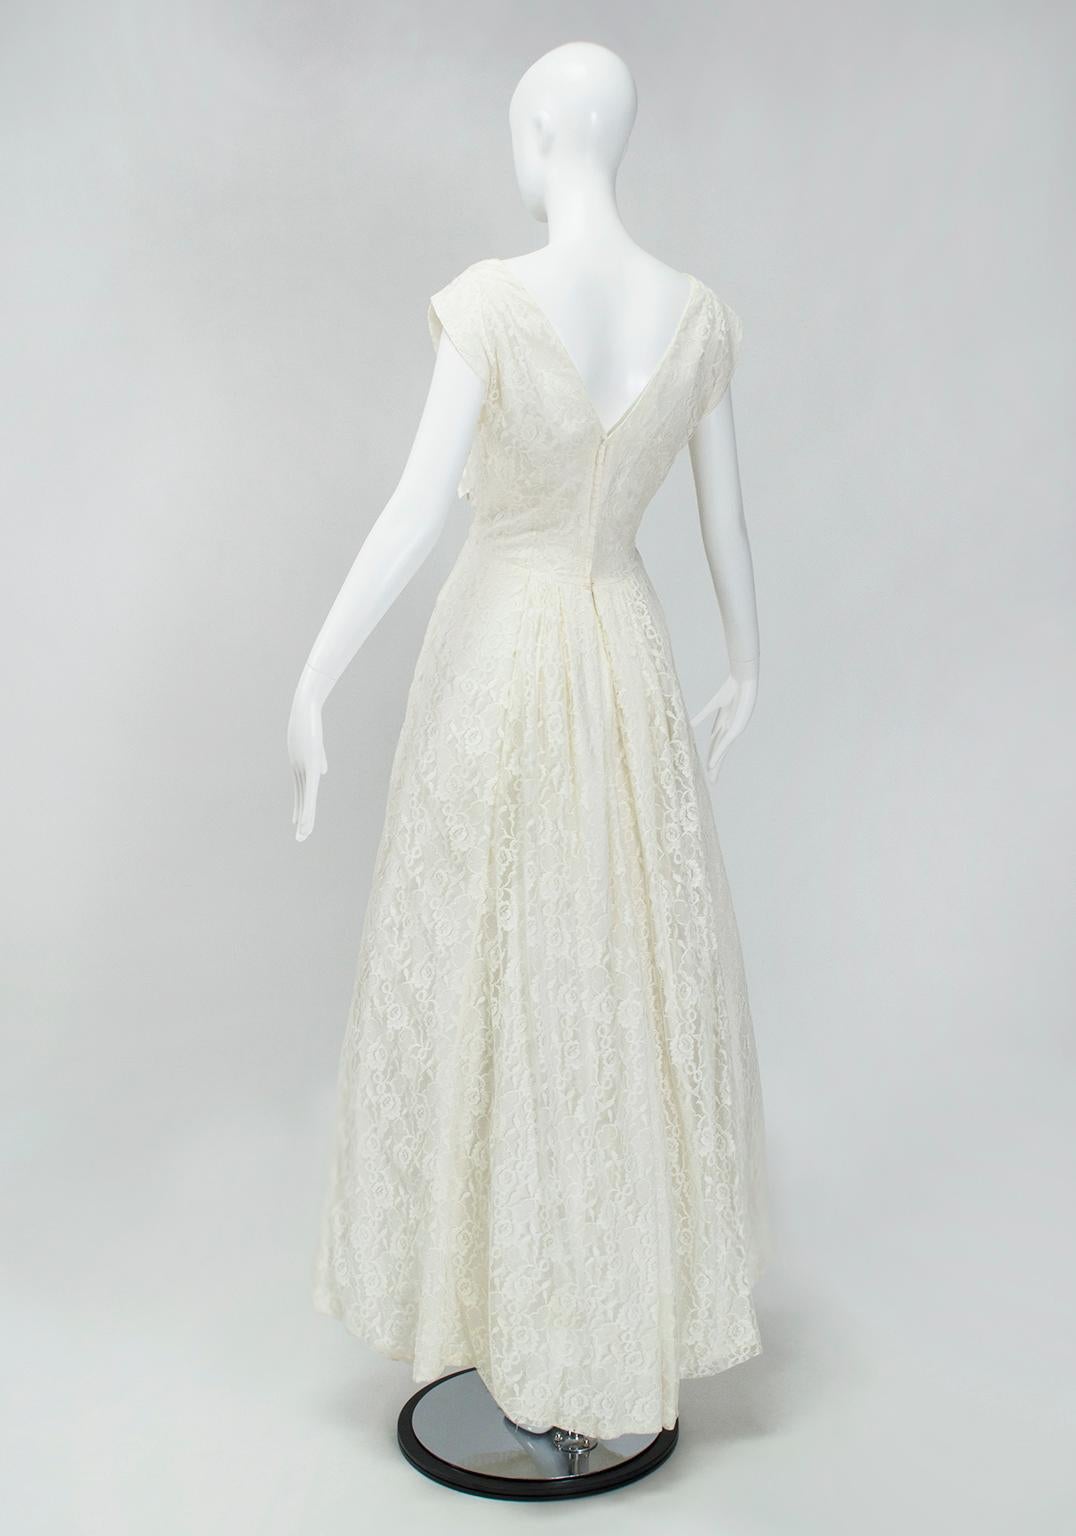 ivory lace dress